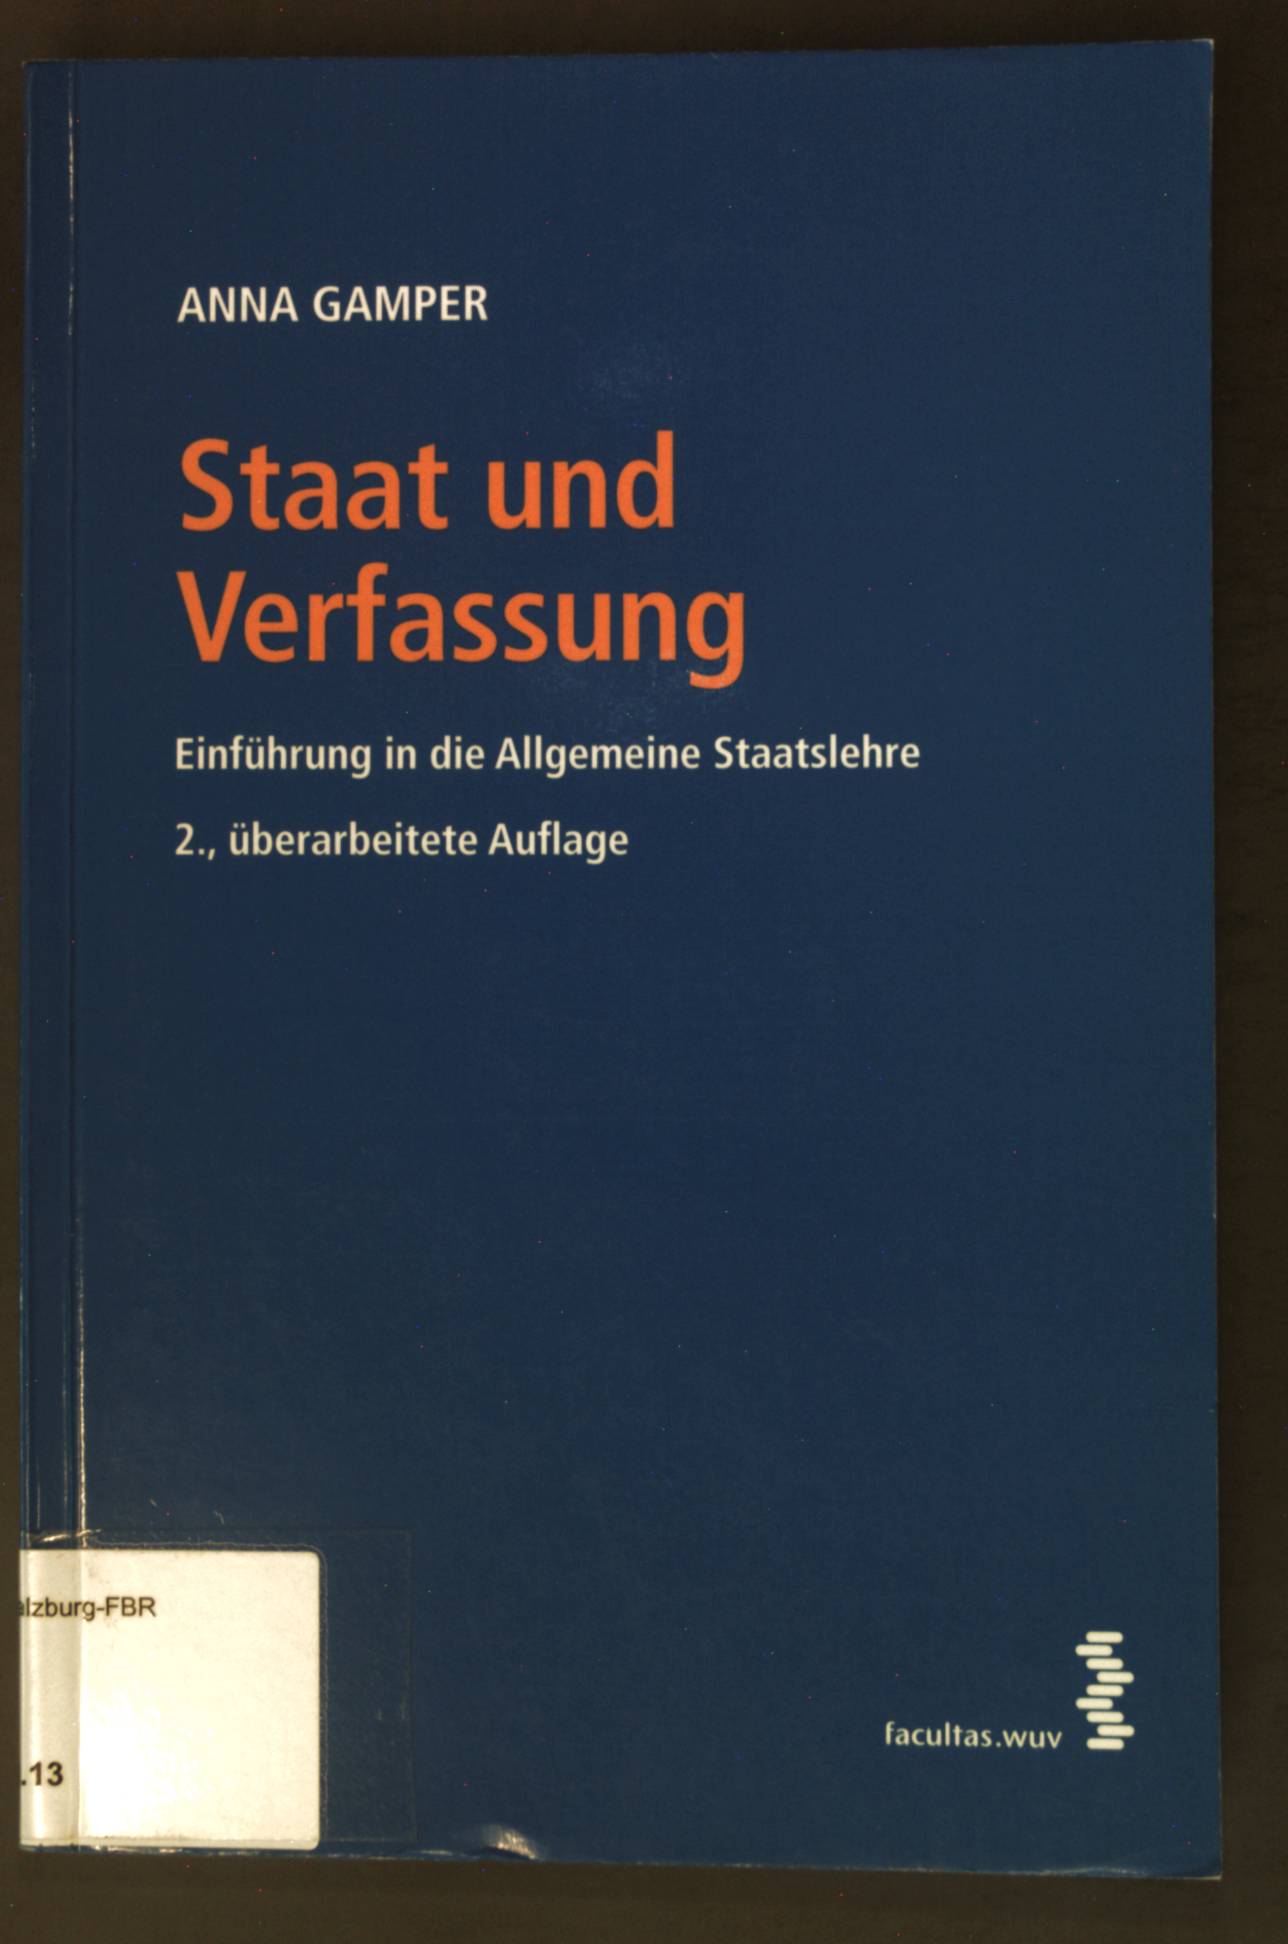 Staat und Verfassung : Einführung in die allgemeine Staatslehre. - Gamper, Anna